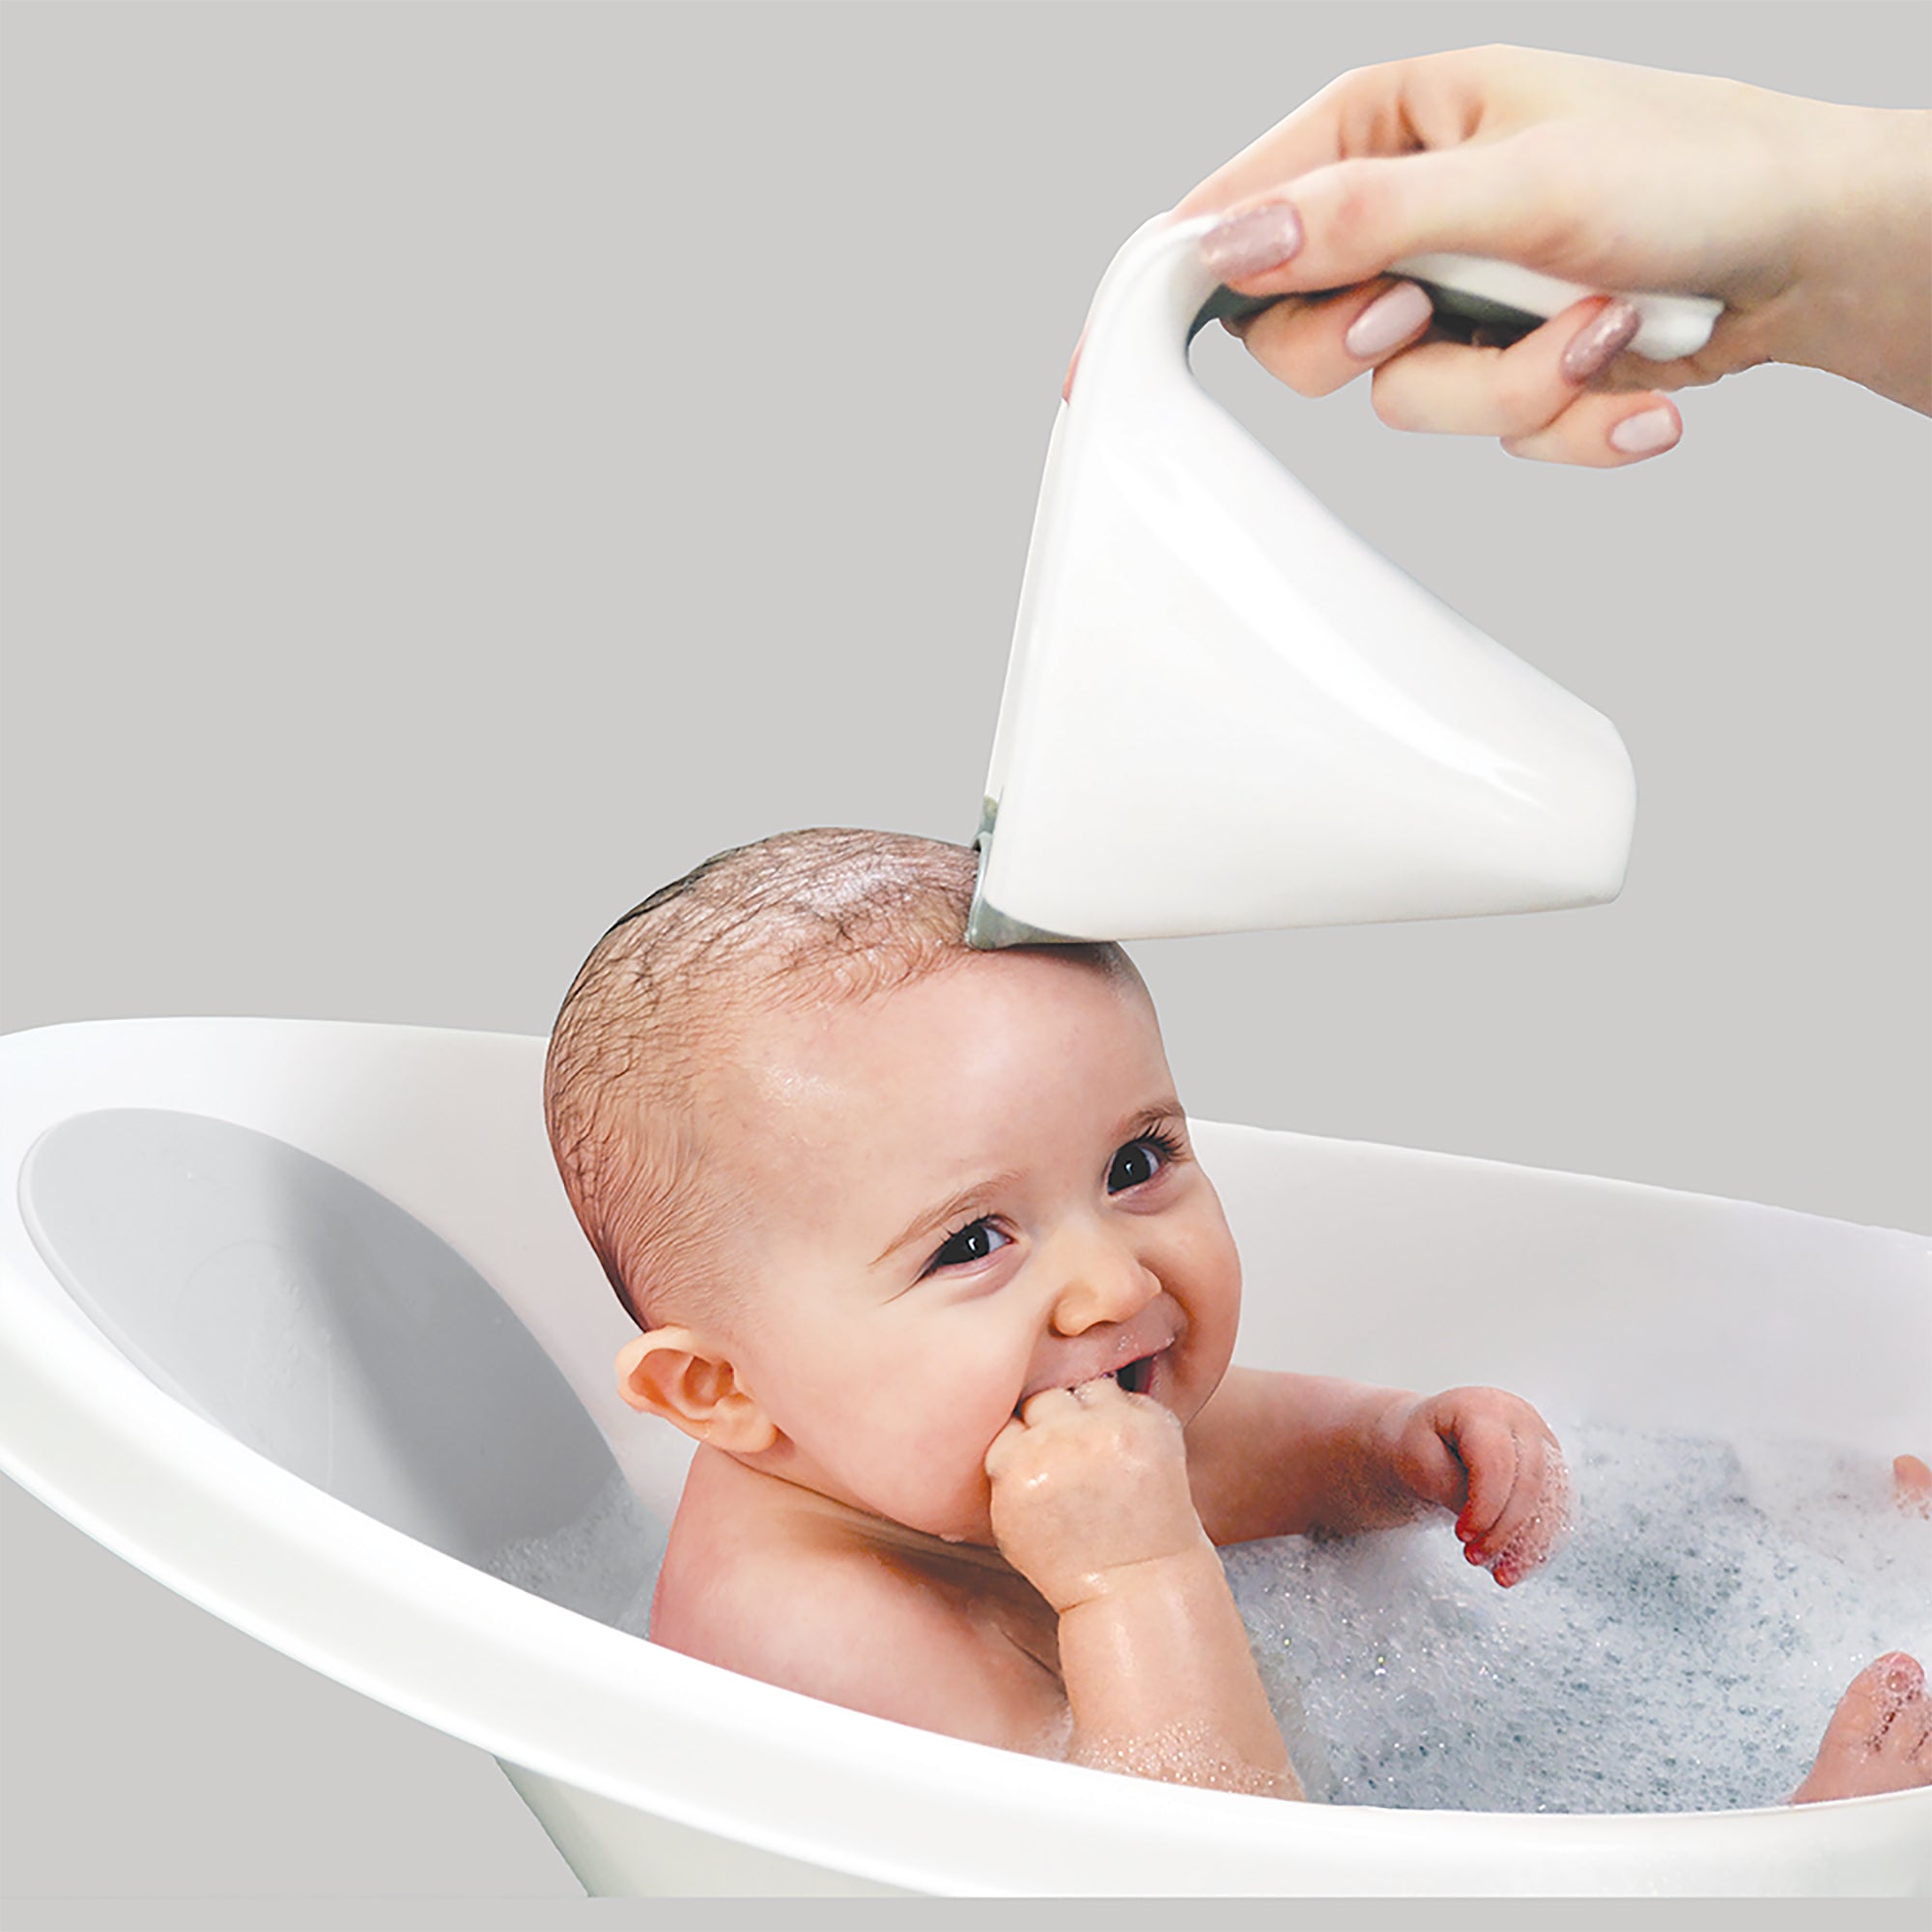 Baby bath with plug & foam backrest